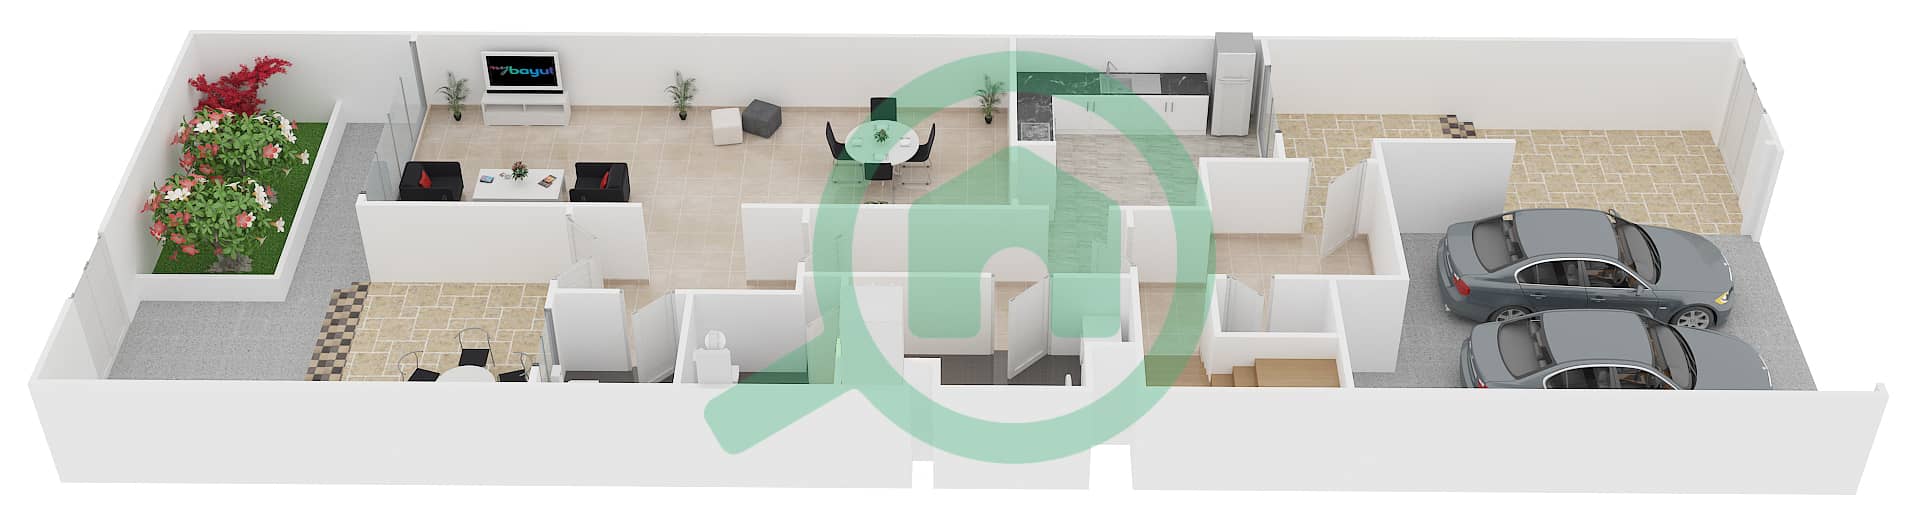 المخططات الطابقية لتصميم النموذج D فیلا 3 غرف نوم - تراس الشمال interactive3D